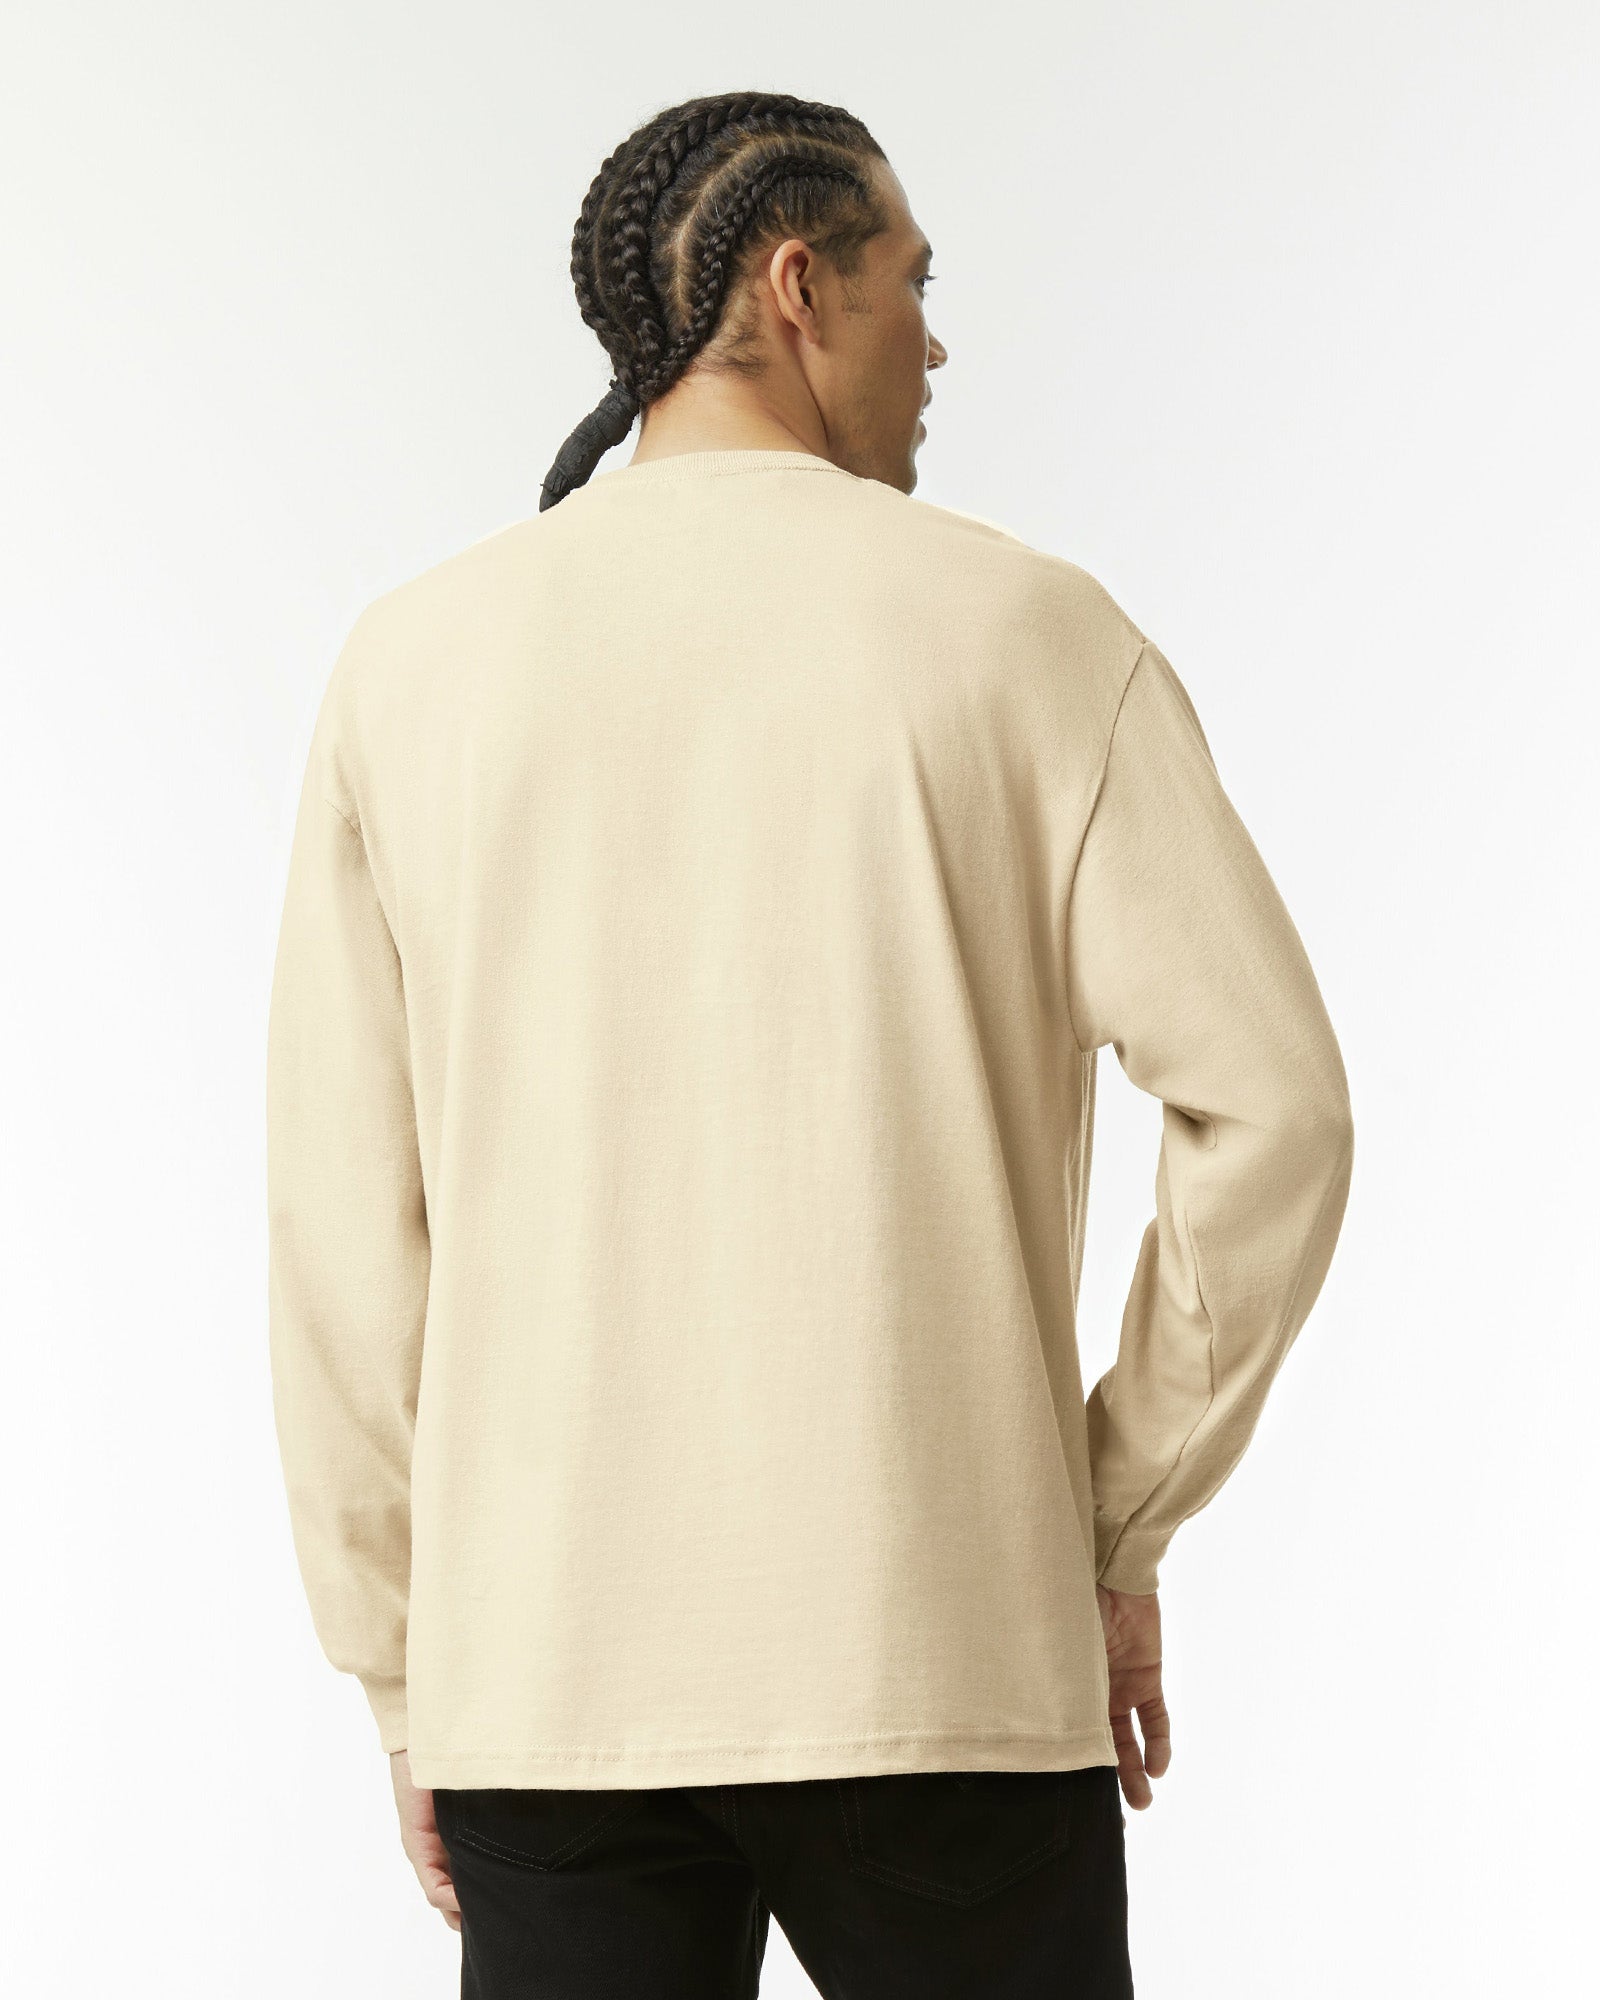 Heavyweight Unisex Long Sleeve T-Shirt - Sand